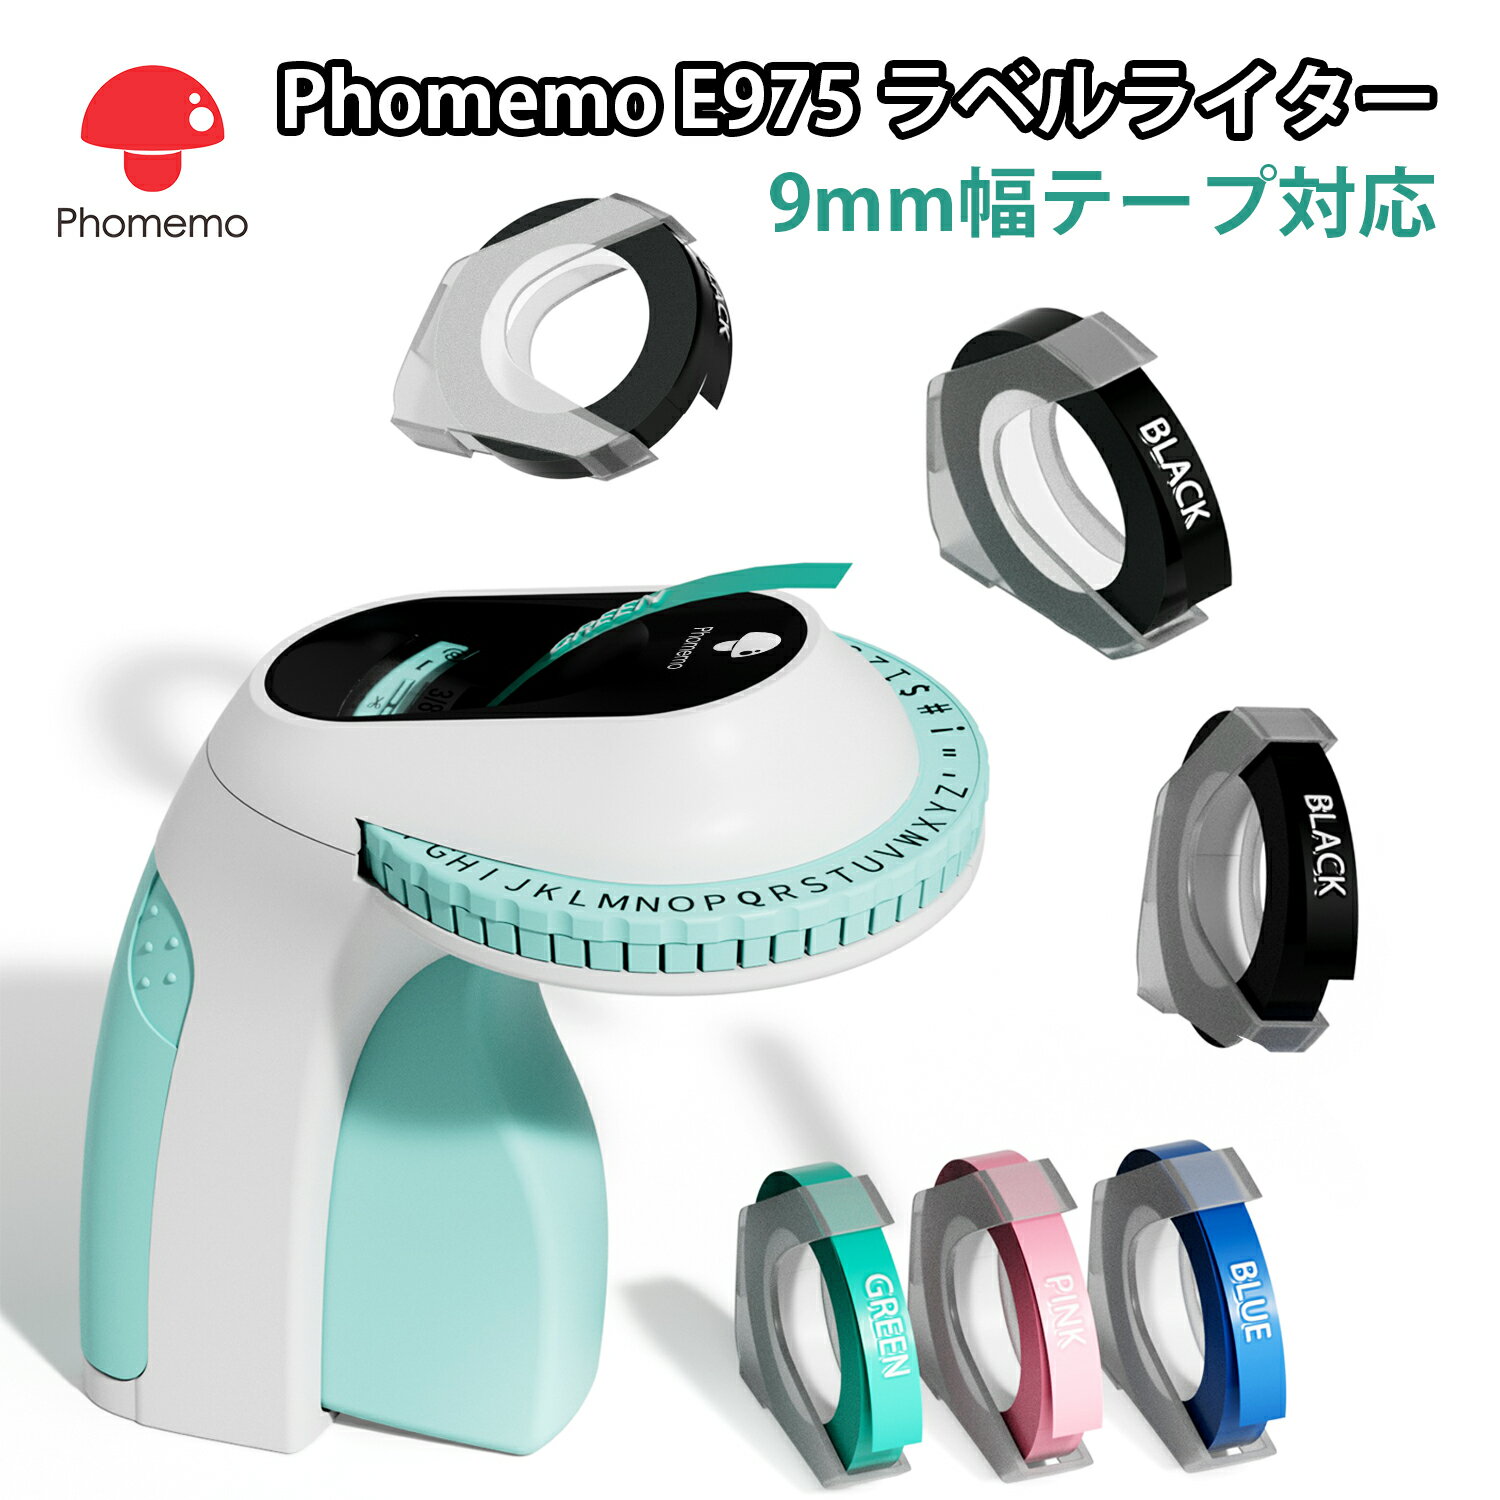 Phomemo E975 ラベルライター テープライター キュティコン 9mm幅テープ対応 英数字 Embossing Label Maker エンボス加工ラベルメーカー 値札/食品表示/ラッピング/DIYラベル/作業/冷蔵庫収納/…